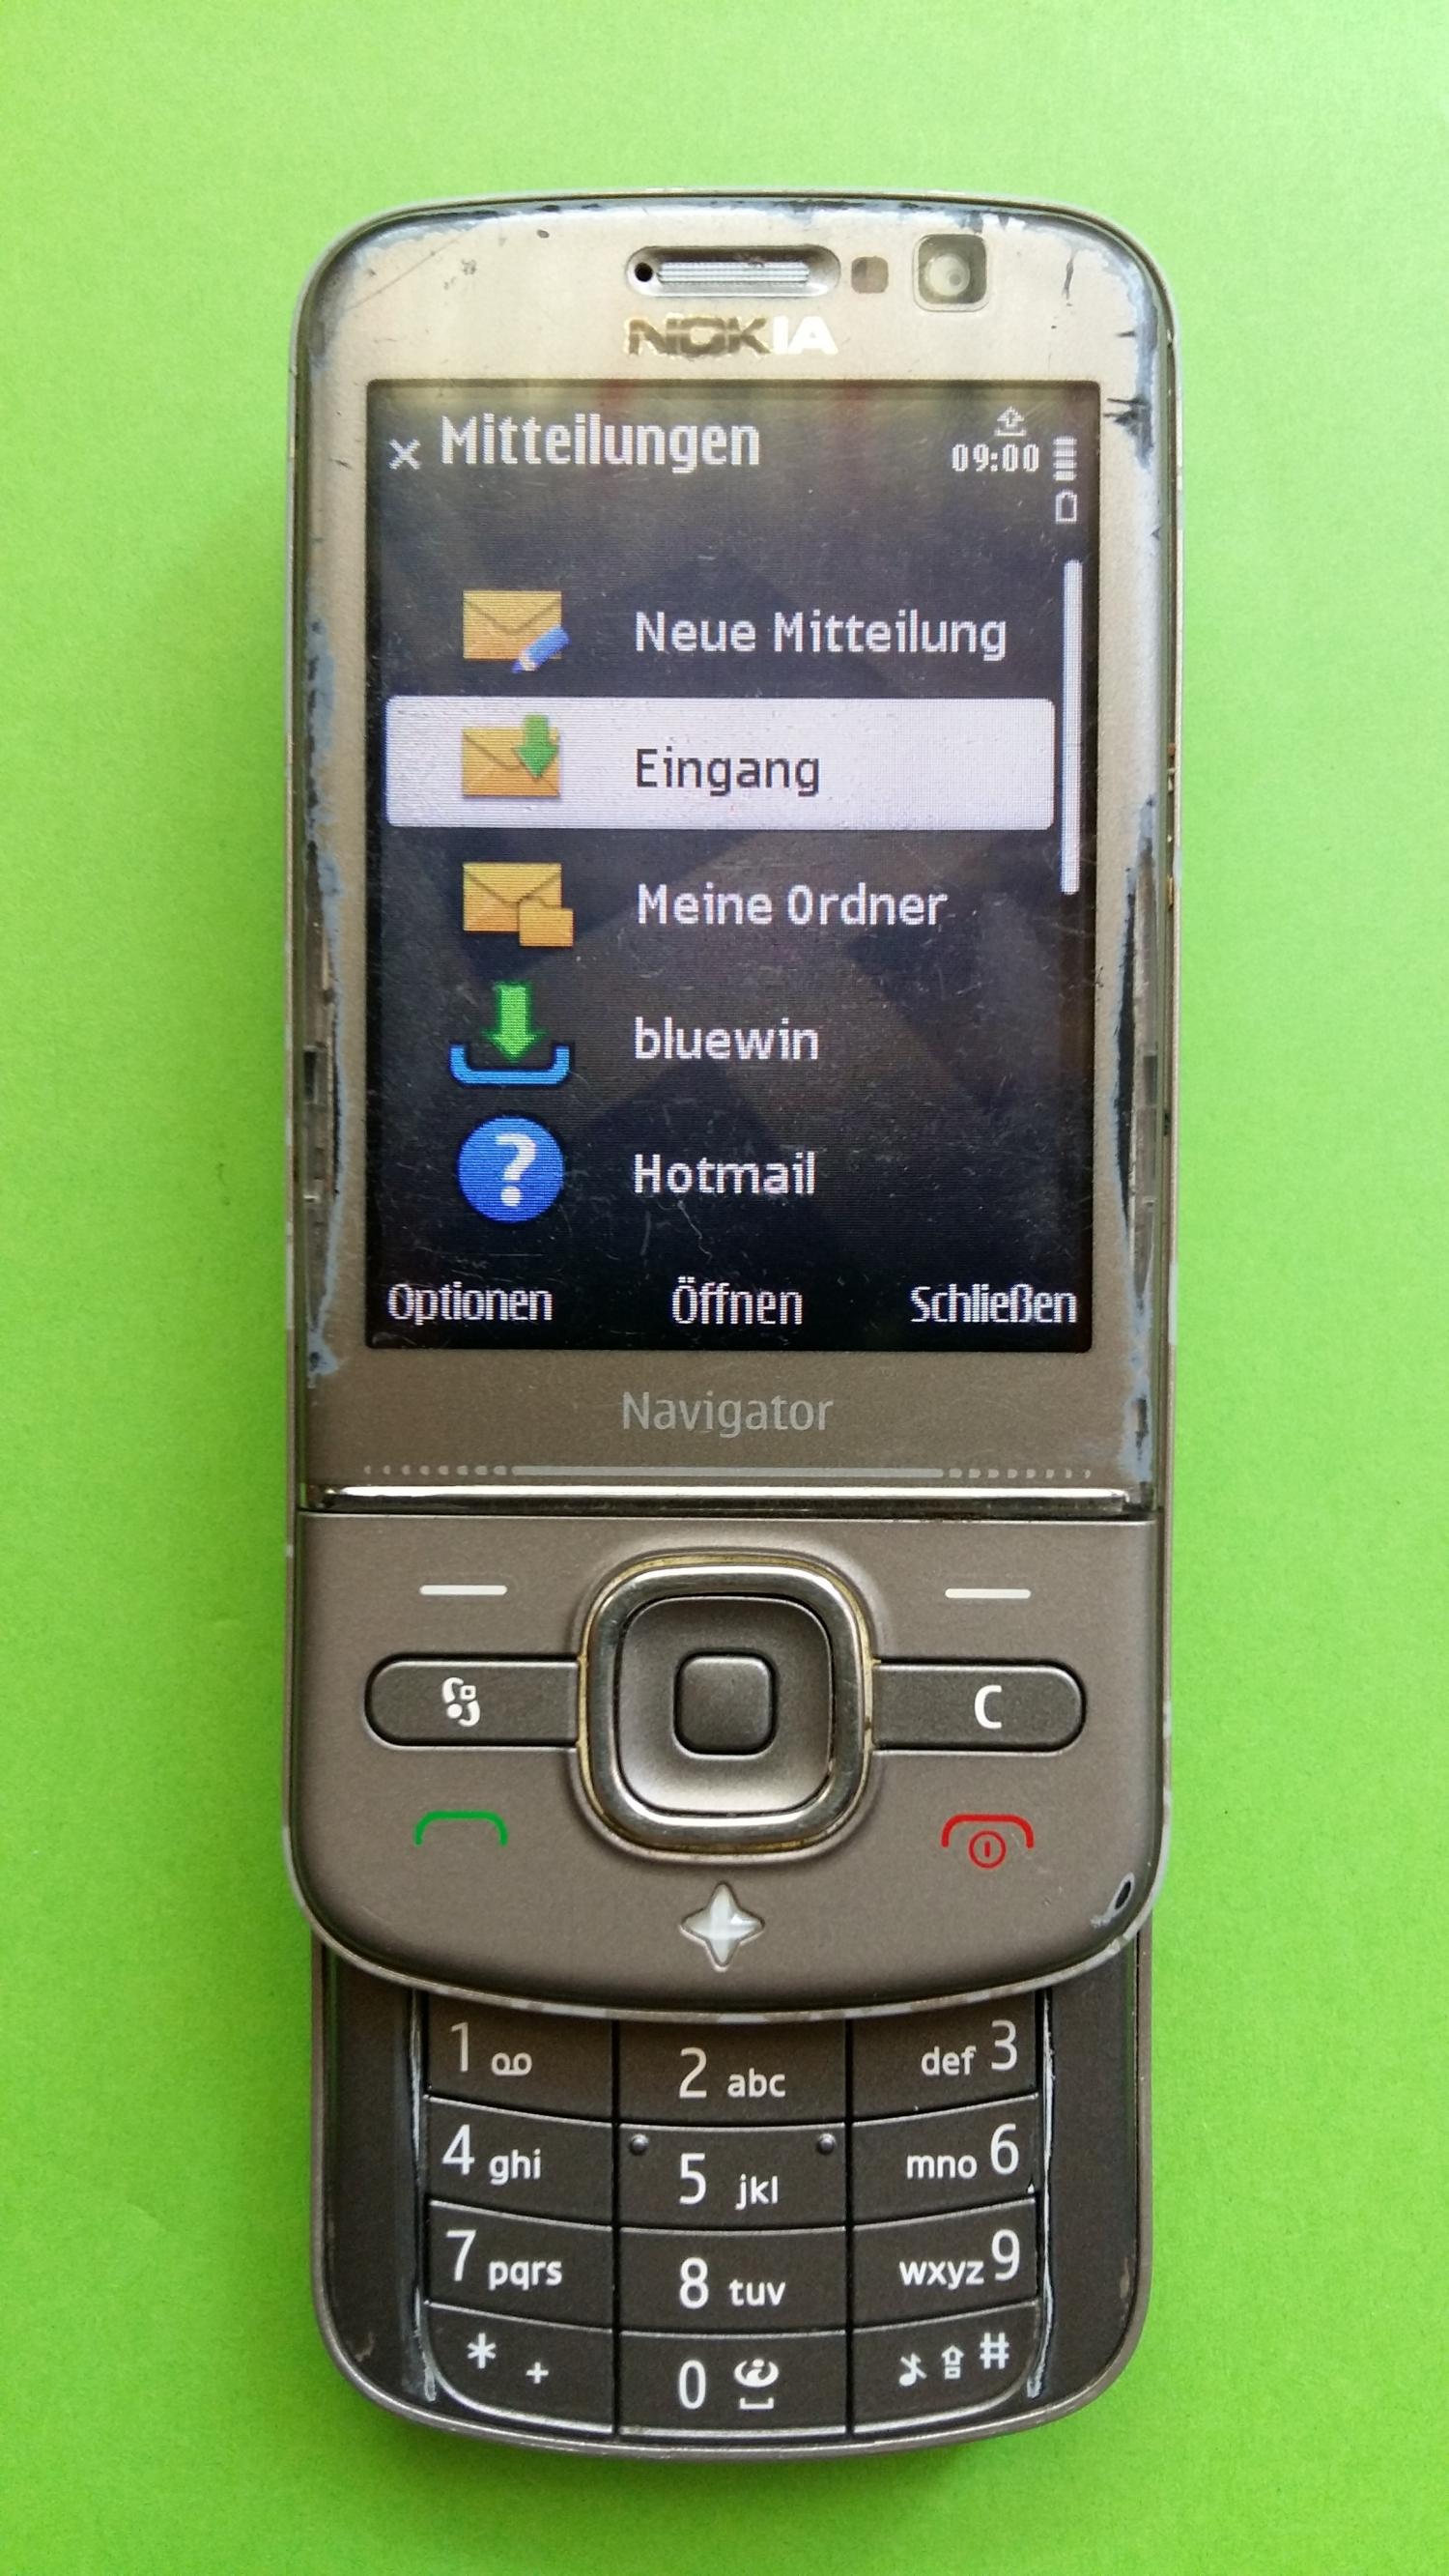 image-7331786-Nokia 6710S Navigator (1)2.jpg